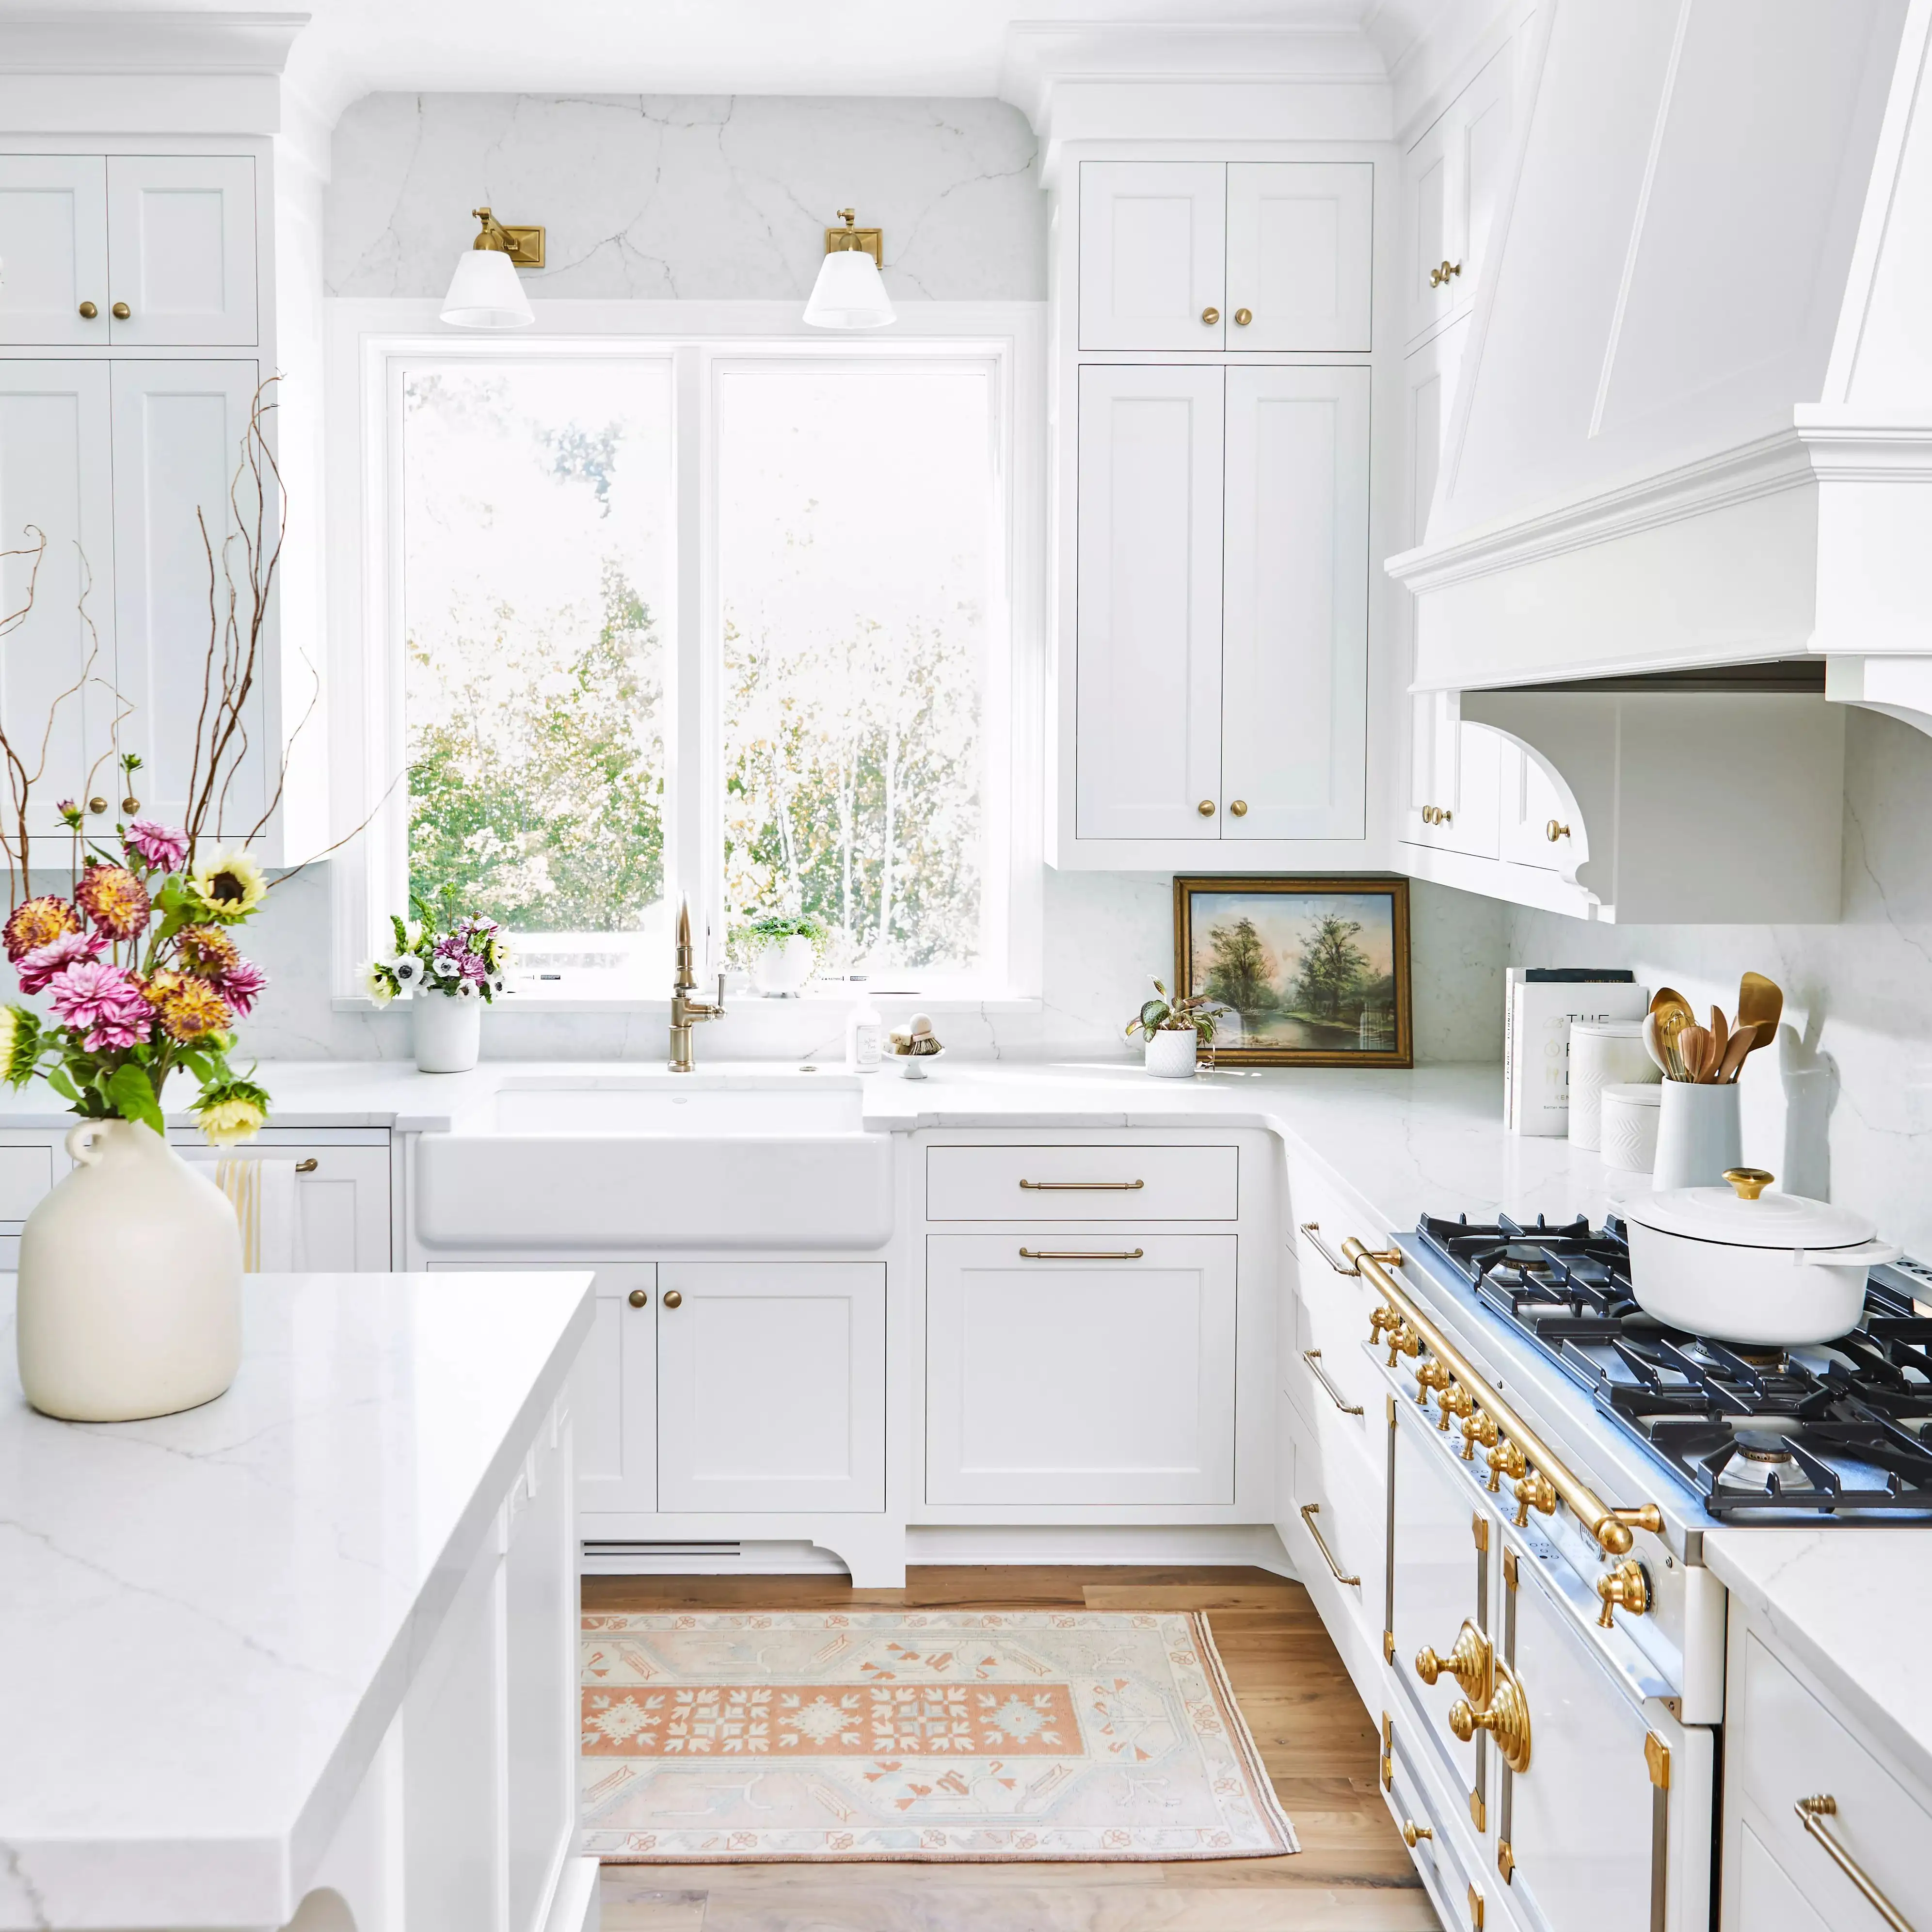 European Style Luxury Solid Wood Modular Kitchen Furniture Modern Design Kitchen Cabinet White Wood Kitchen Cabinet